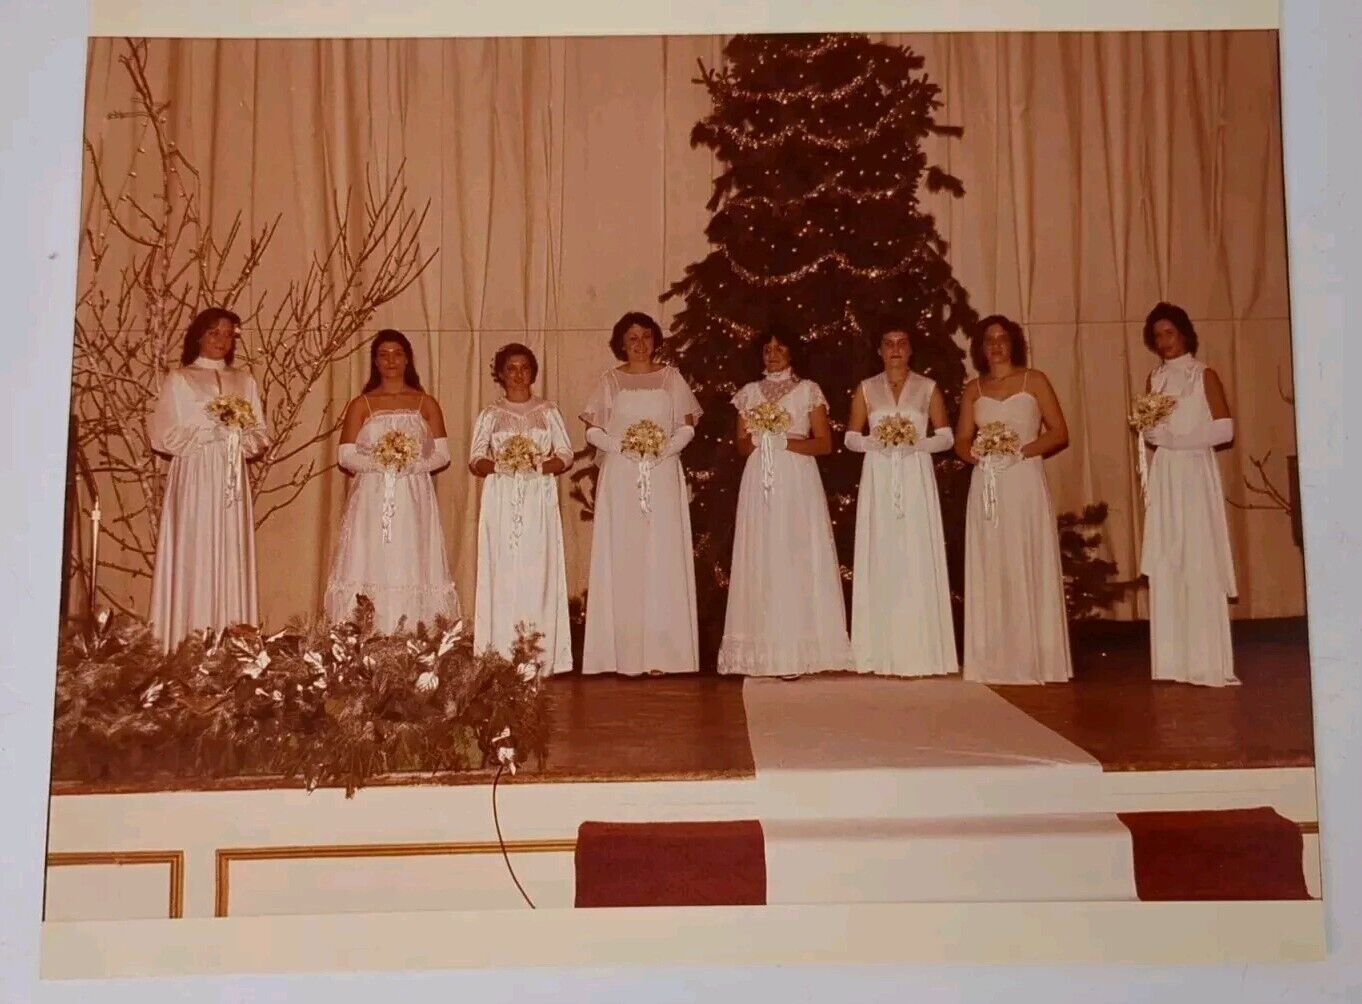 VTG 1970s Found Photograph Original Photo Wedding Bride Bridesmaids Christmas